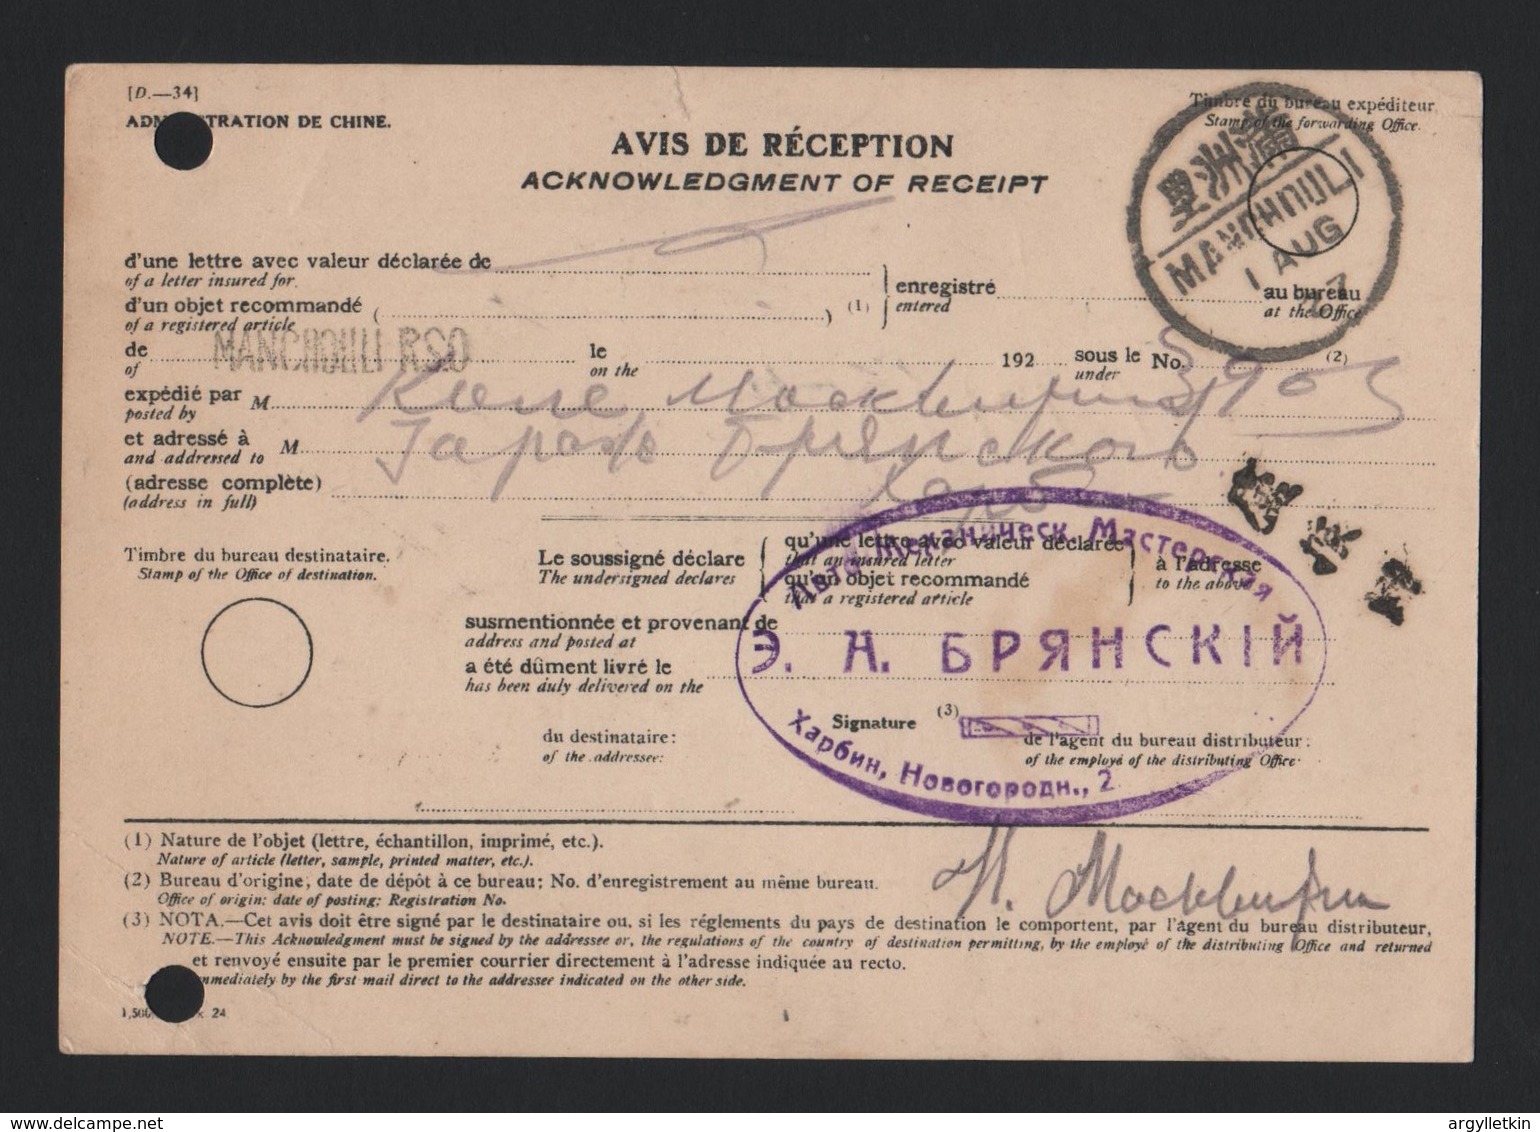 CHINA A.R. RECEIPT STATIONERY 1927 RUSSIAN MERCHANT HARBIN - Mandschurei 1927-33